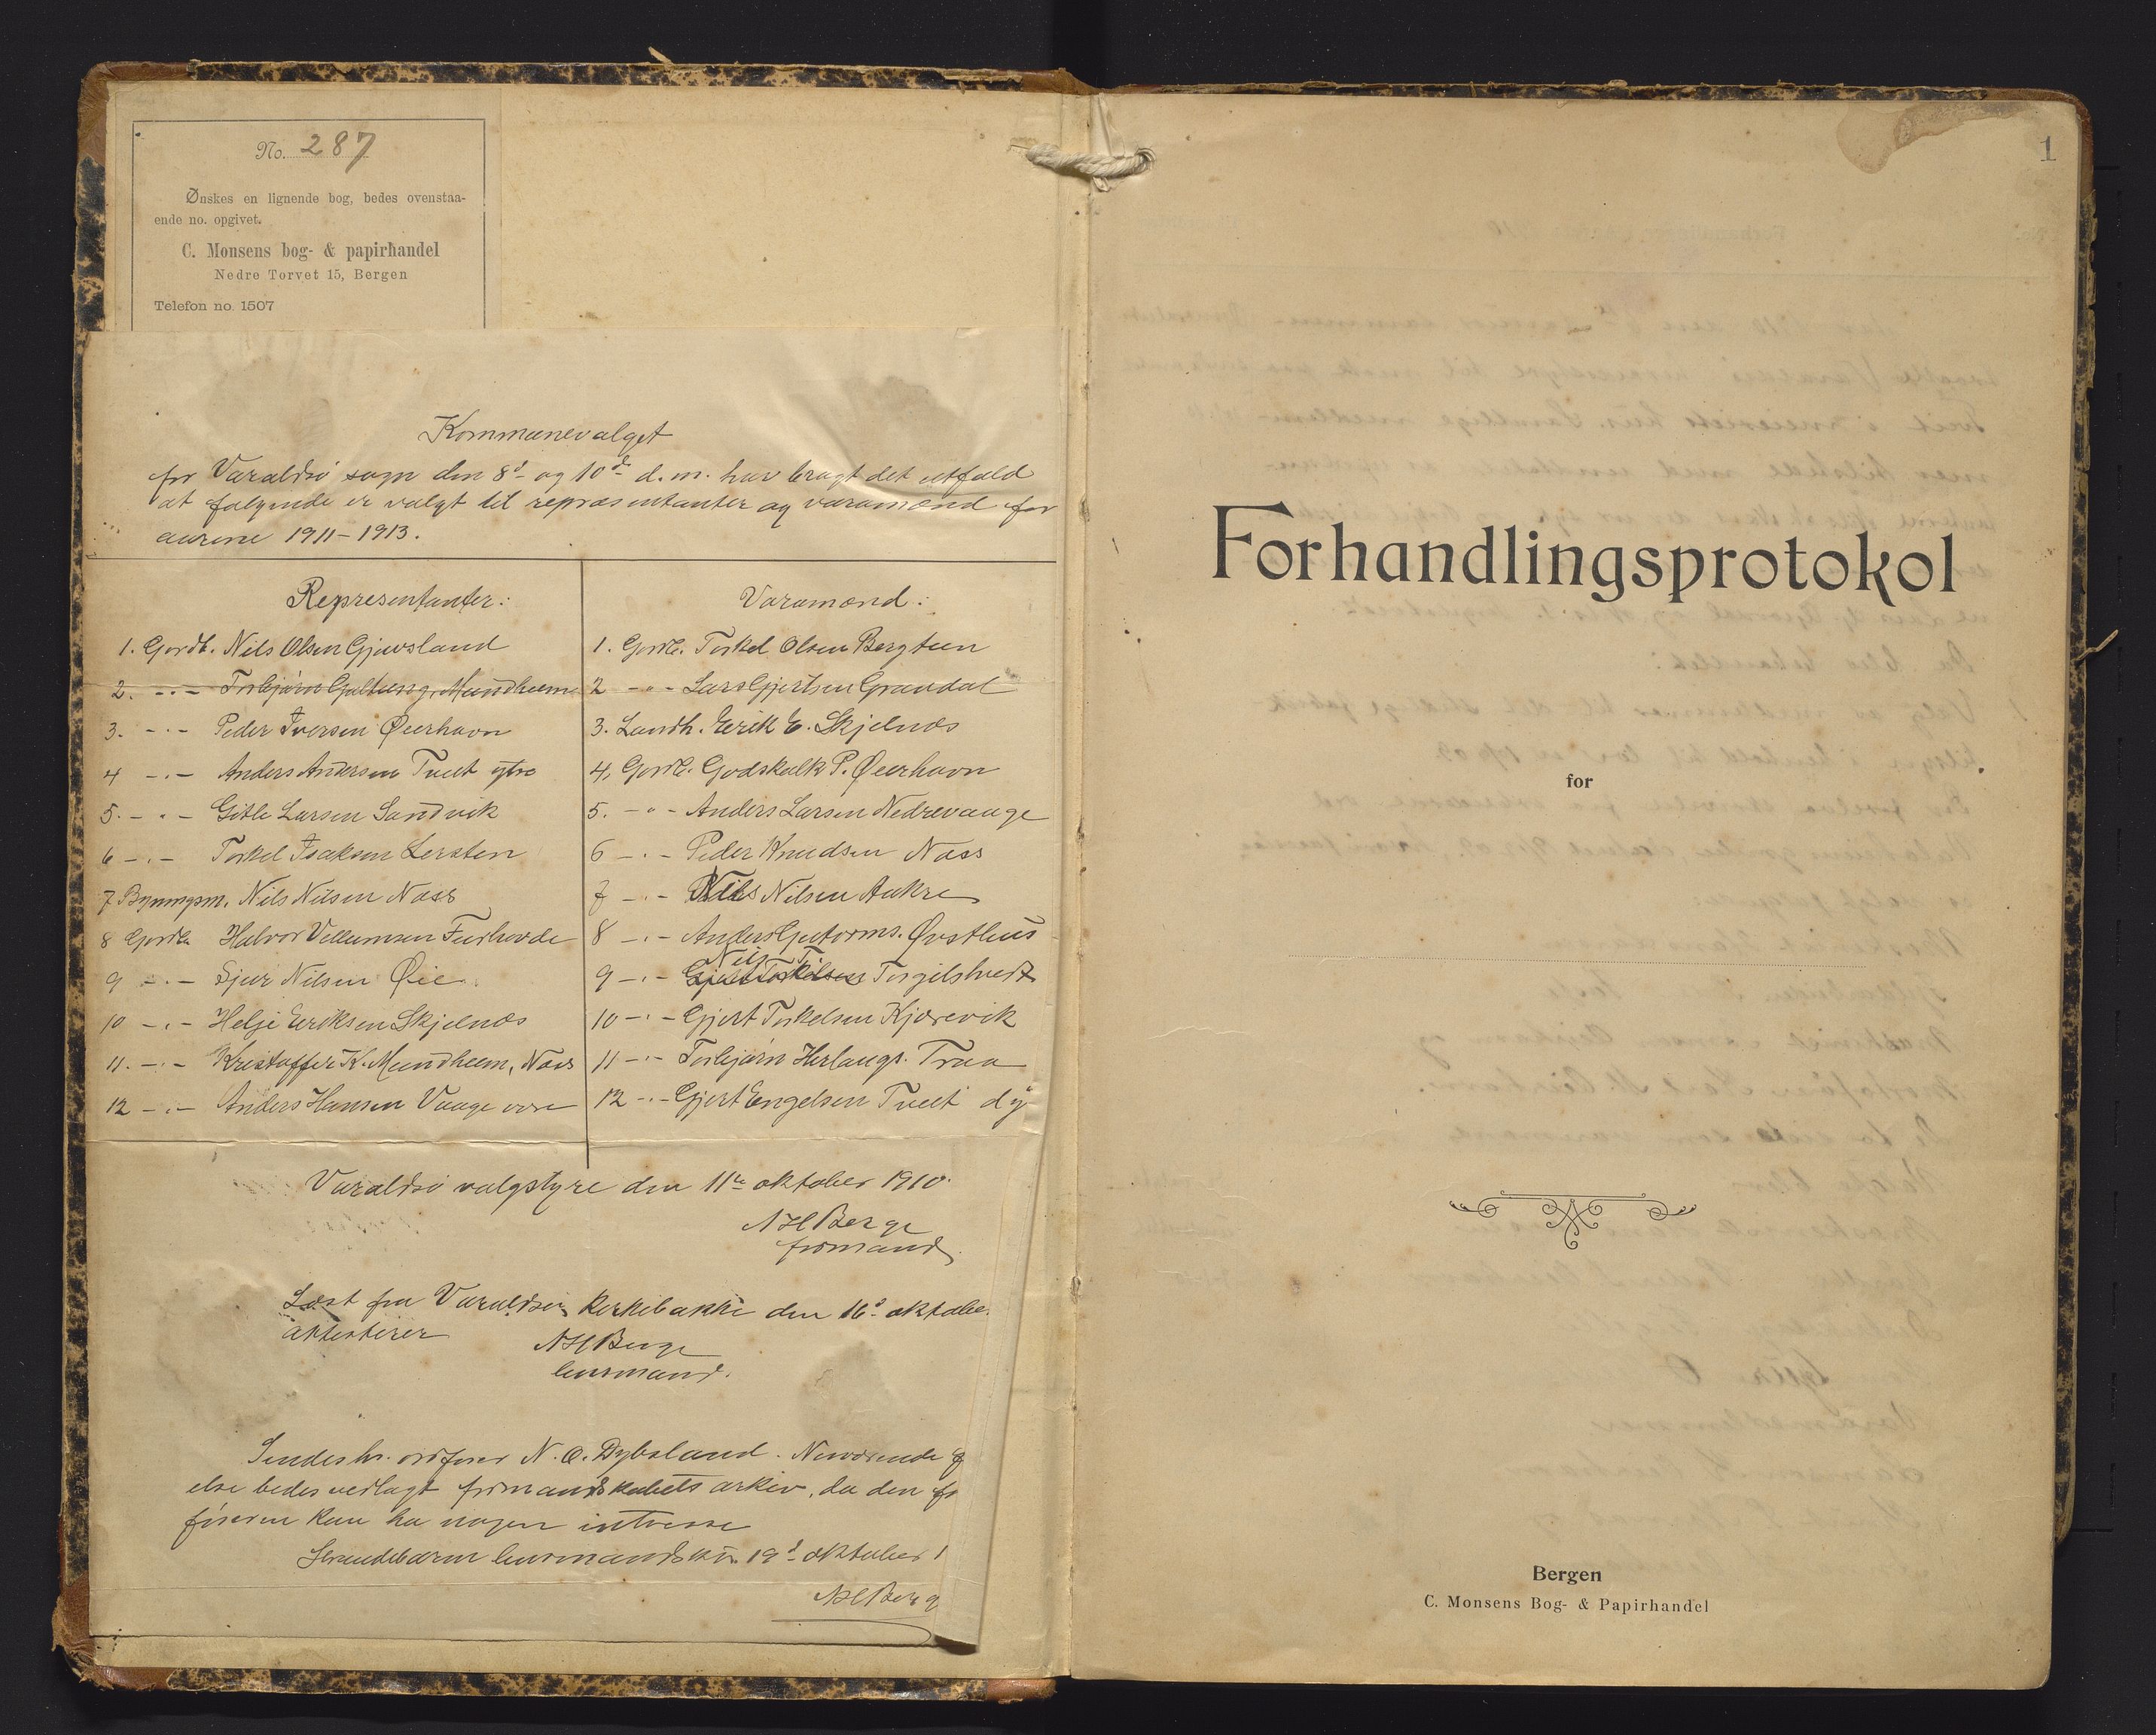 IKAH, Varaldsøy kommune. Formannskapet, A/Aa/L0002: Møtebok for formannskap og heradstyre, 1910-1916, p. 1